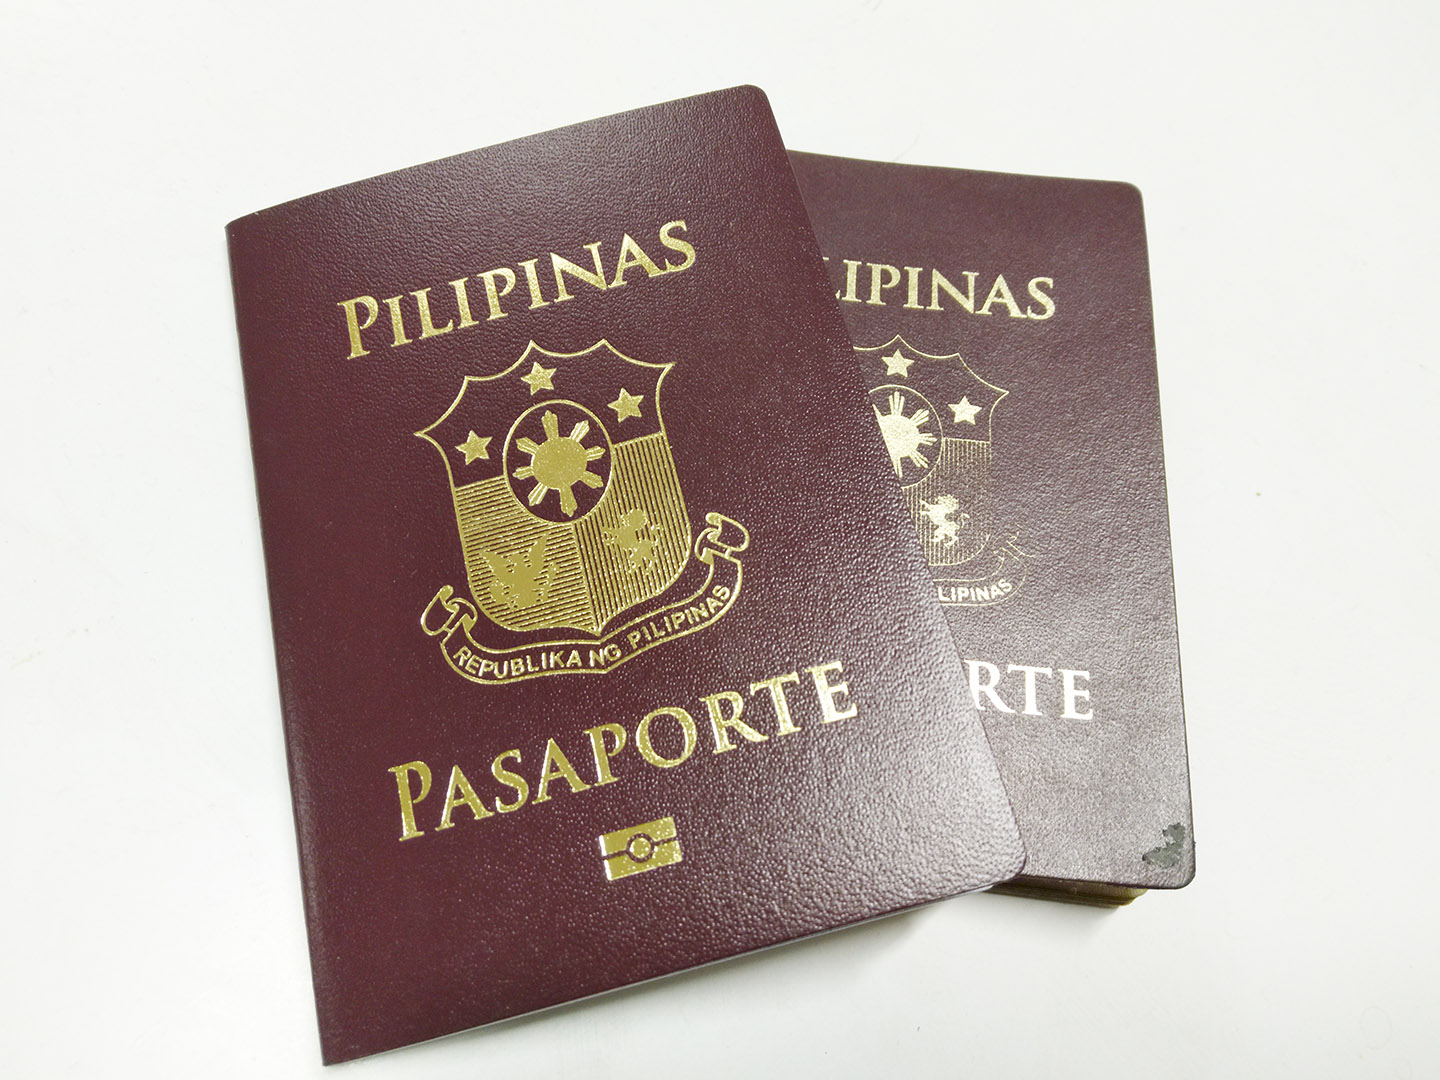 india tourist visa for philippines